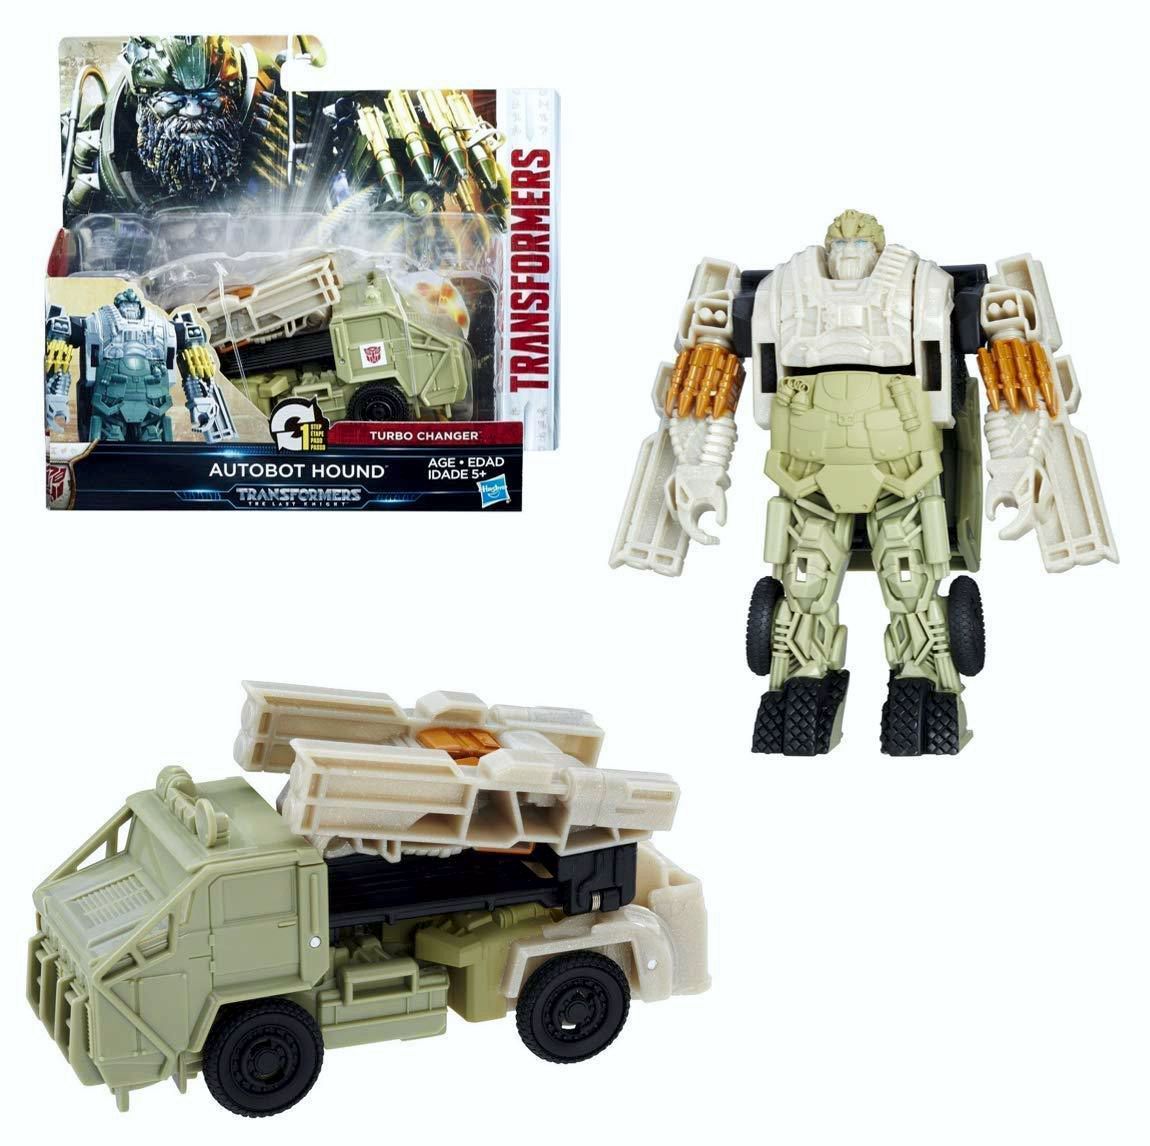 Купить трансформер 5 в 1. Фигурки трансформеры сага в коробке. Робот-трансформер хаунд "Transformers - Autobot Hound" как трансфопмировать. Трансформер хаунд купить.